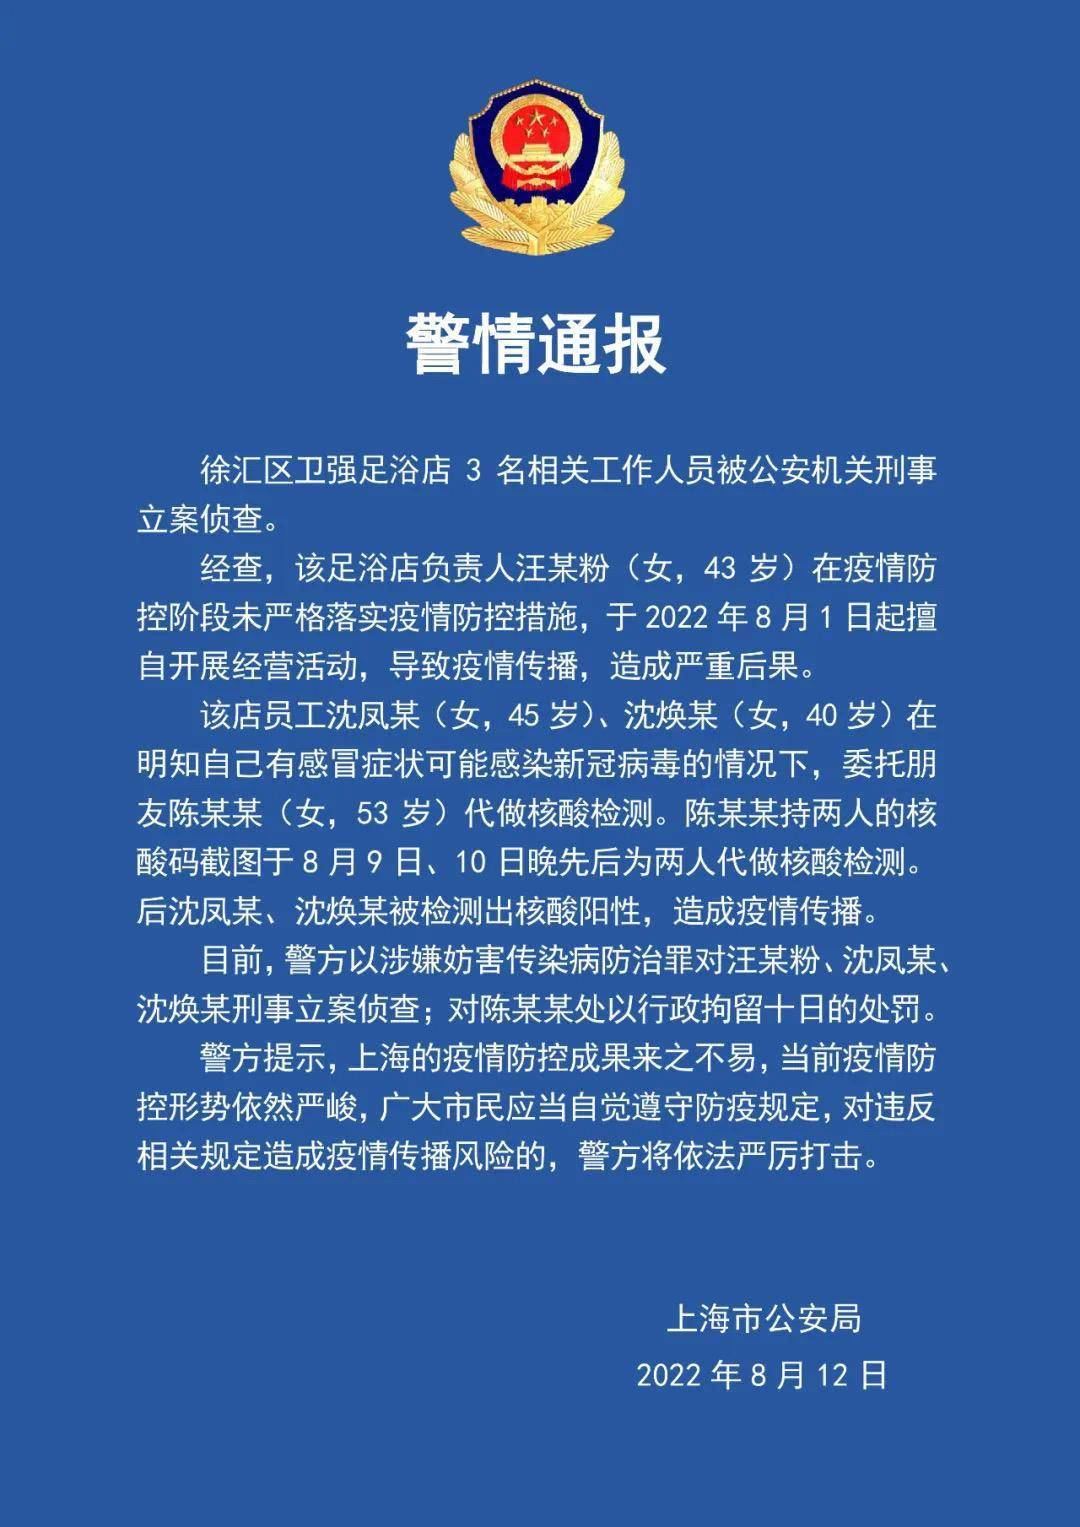 上海徐汇涉疫足浴店3名相关人员被警方刑事立案